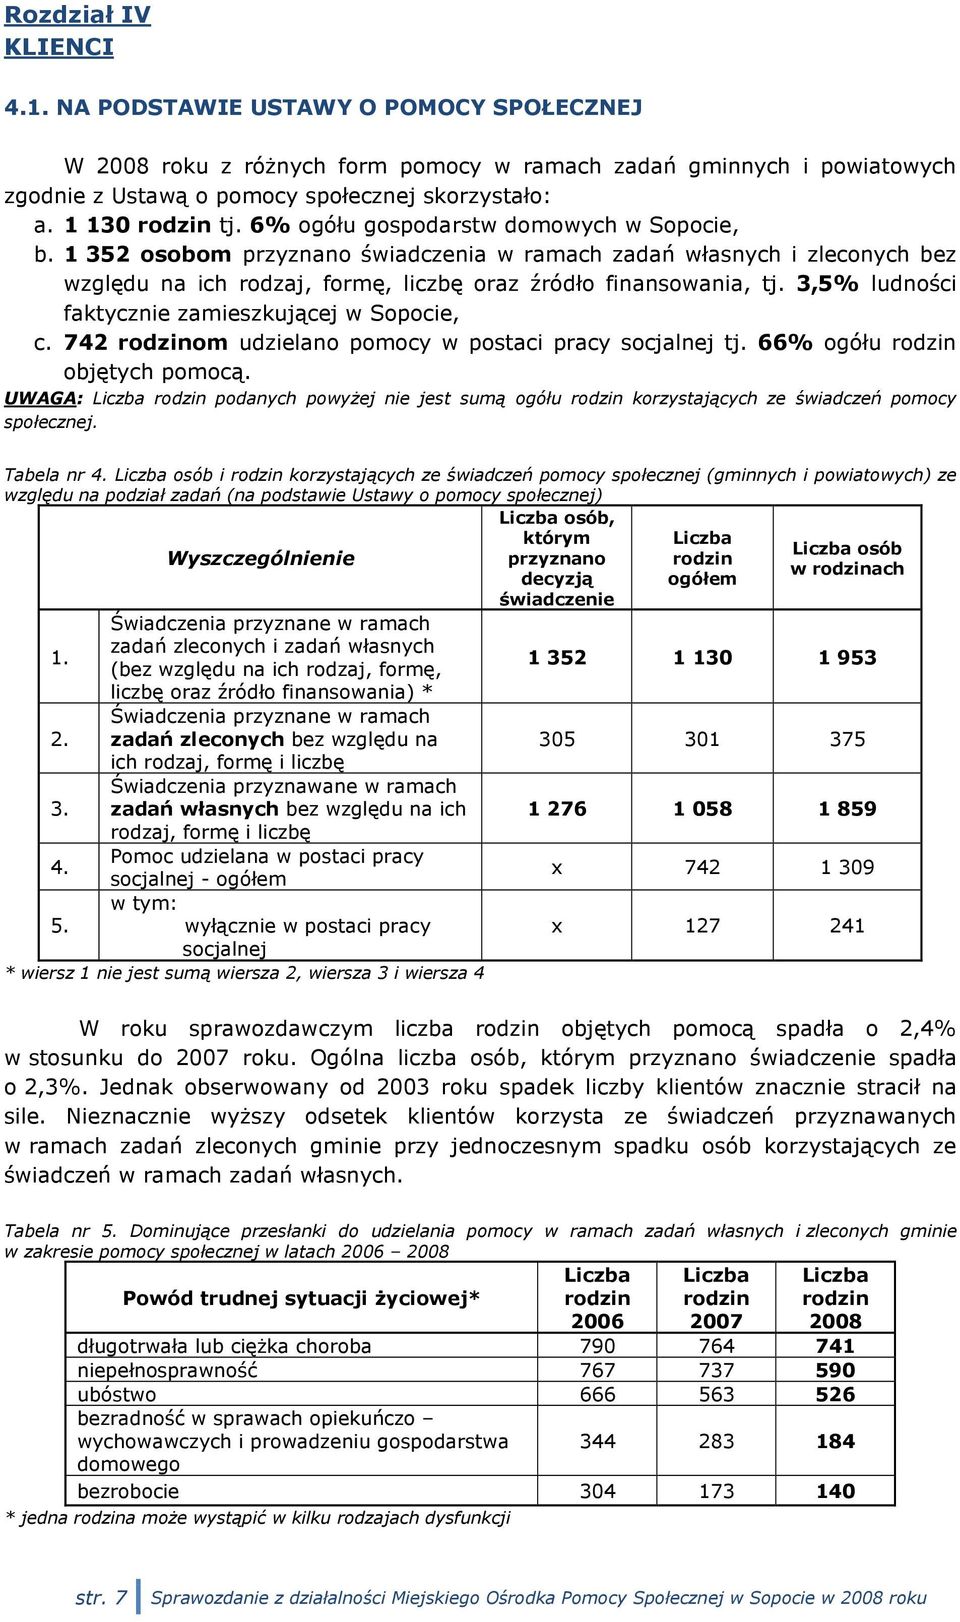 1 352 osobom przyznano świadczenia w ramach zadań własnych i zleconych bez względu na ich rodzaj, formę, liczbę oraz źródło finansowania, tj. 3,5% ludności faktycznie zamieszkującej w Sopocie, c.